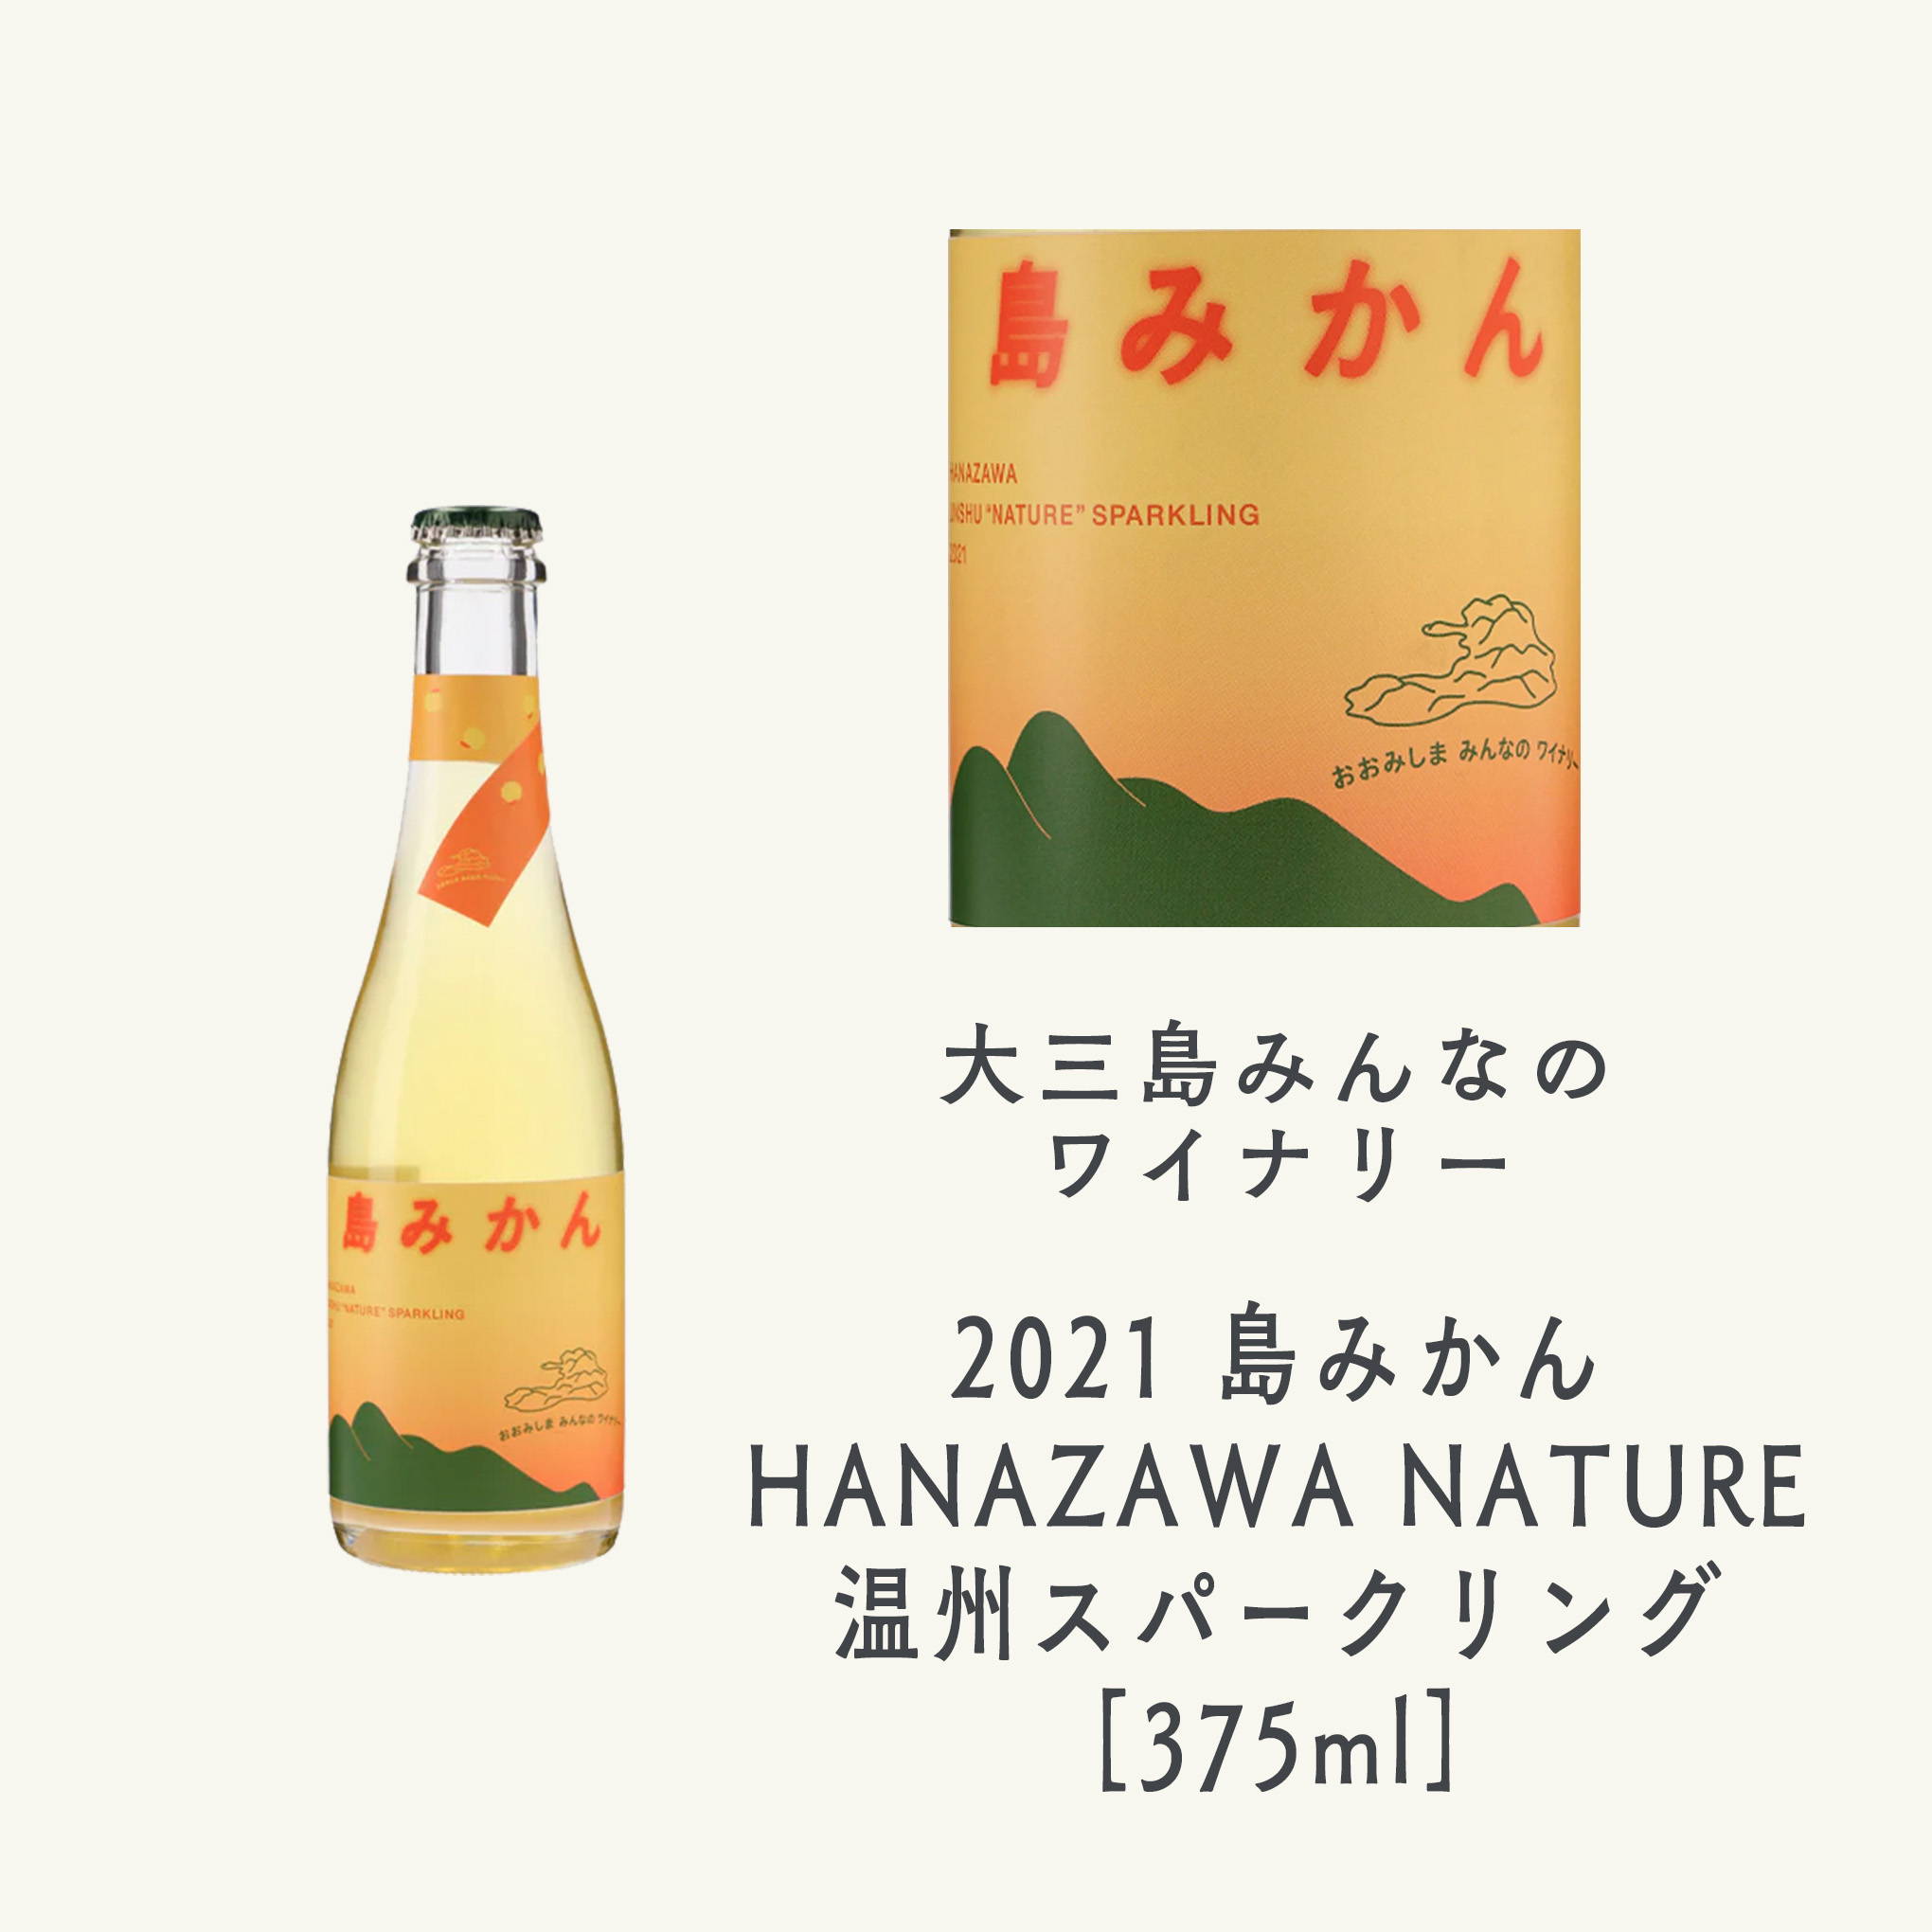 契約農家・花澤伸浩氏の無農薬ミカンのみを、瓶内二次発酵で仕立てた希少な辛口スパークリングワイン。ぜひ飲み比べてみて欲しい逸品！